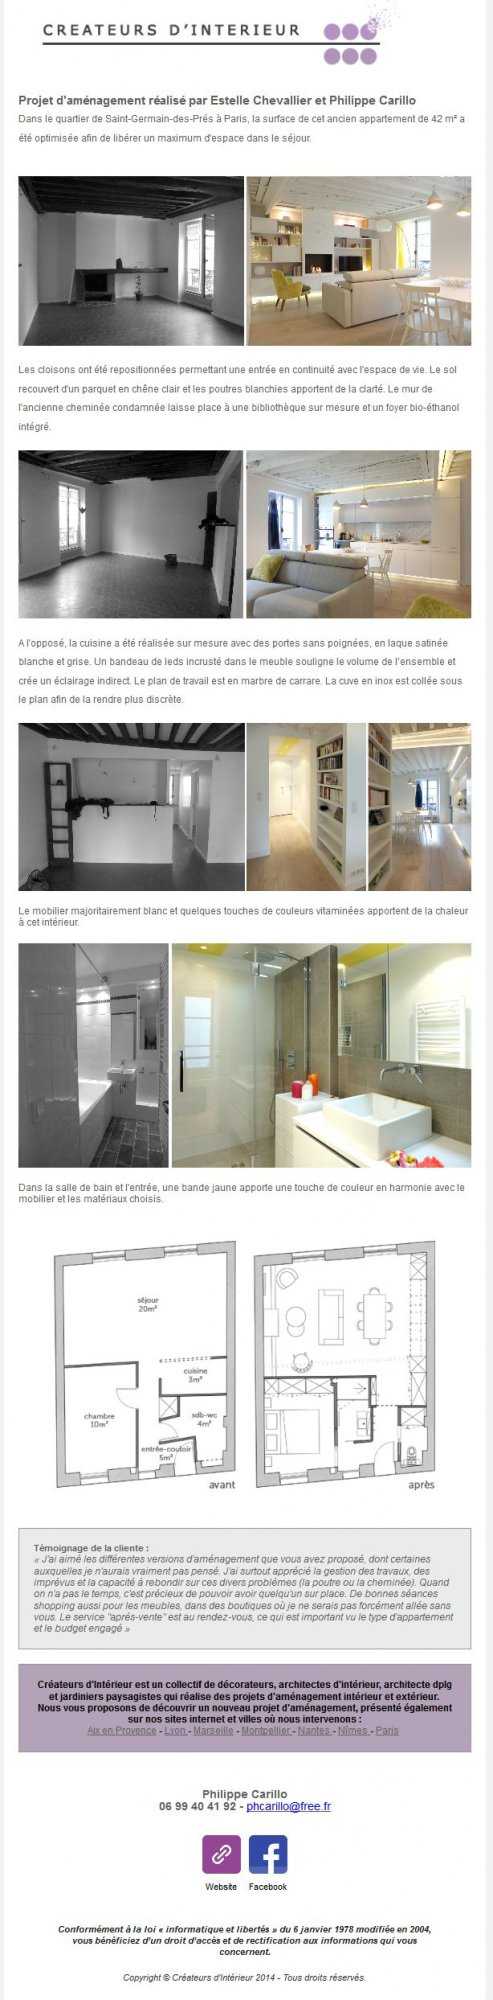 Newsletter d'octobre 2014 sur l'aménagement d'un appartement de 42m2 à Paris par un architecte d'intérieur.